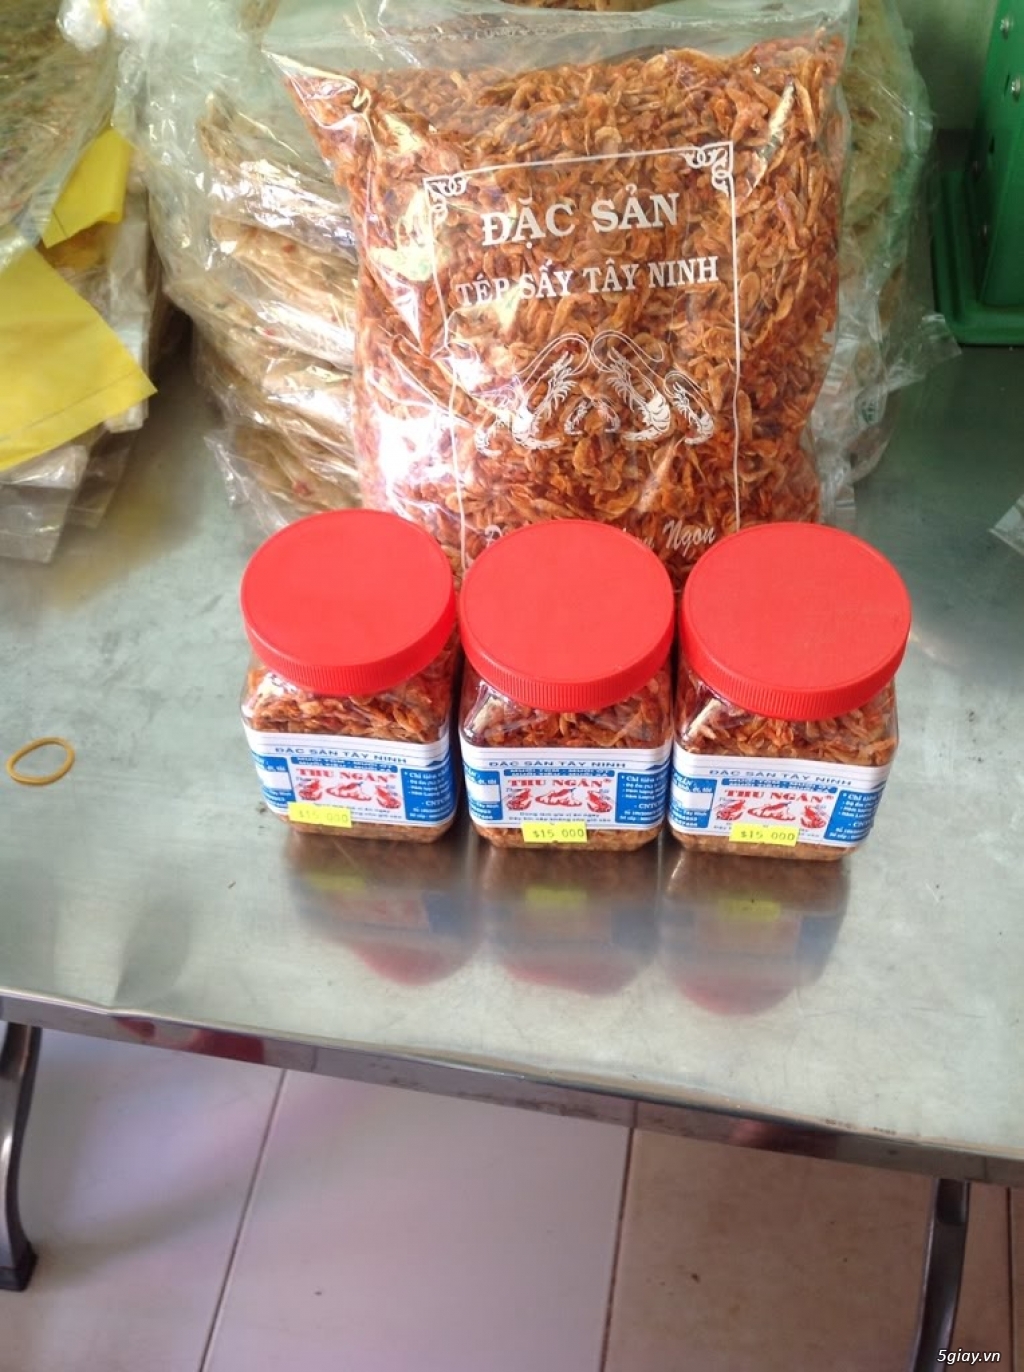 Đặc sản Tây Ninh-Thu Ngân cung cấp sỉ & lẻ các loại bánh tráng & muối các loại... - 38